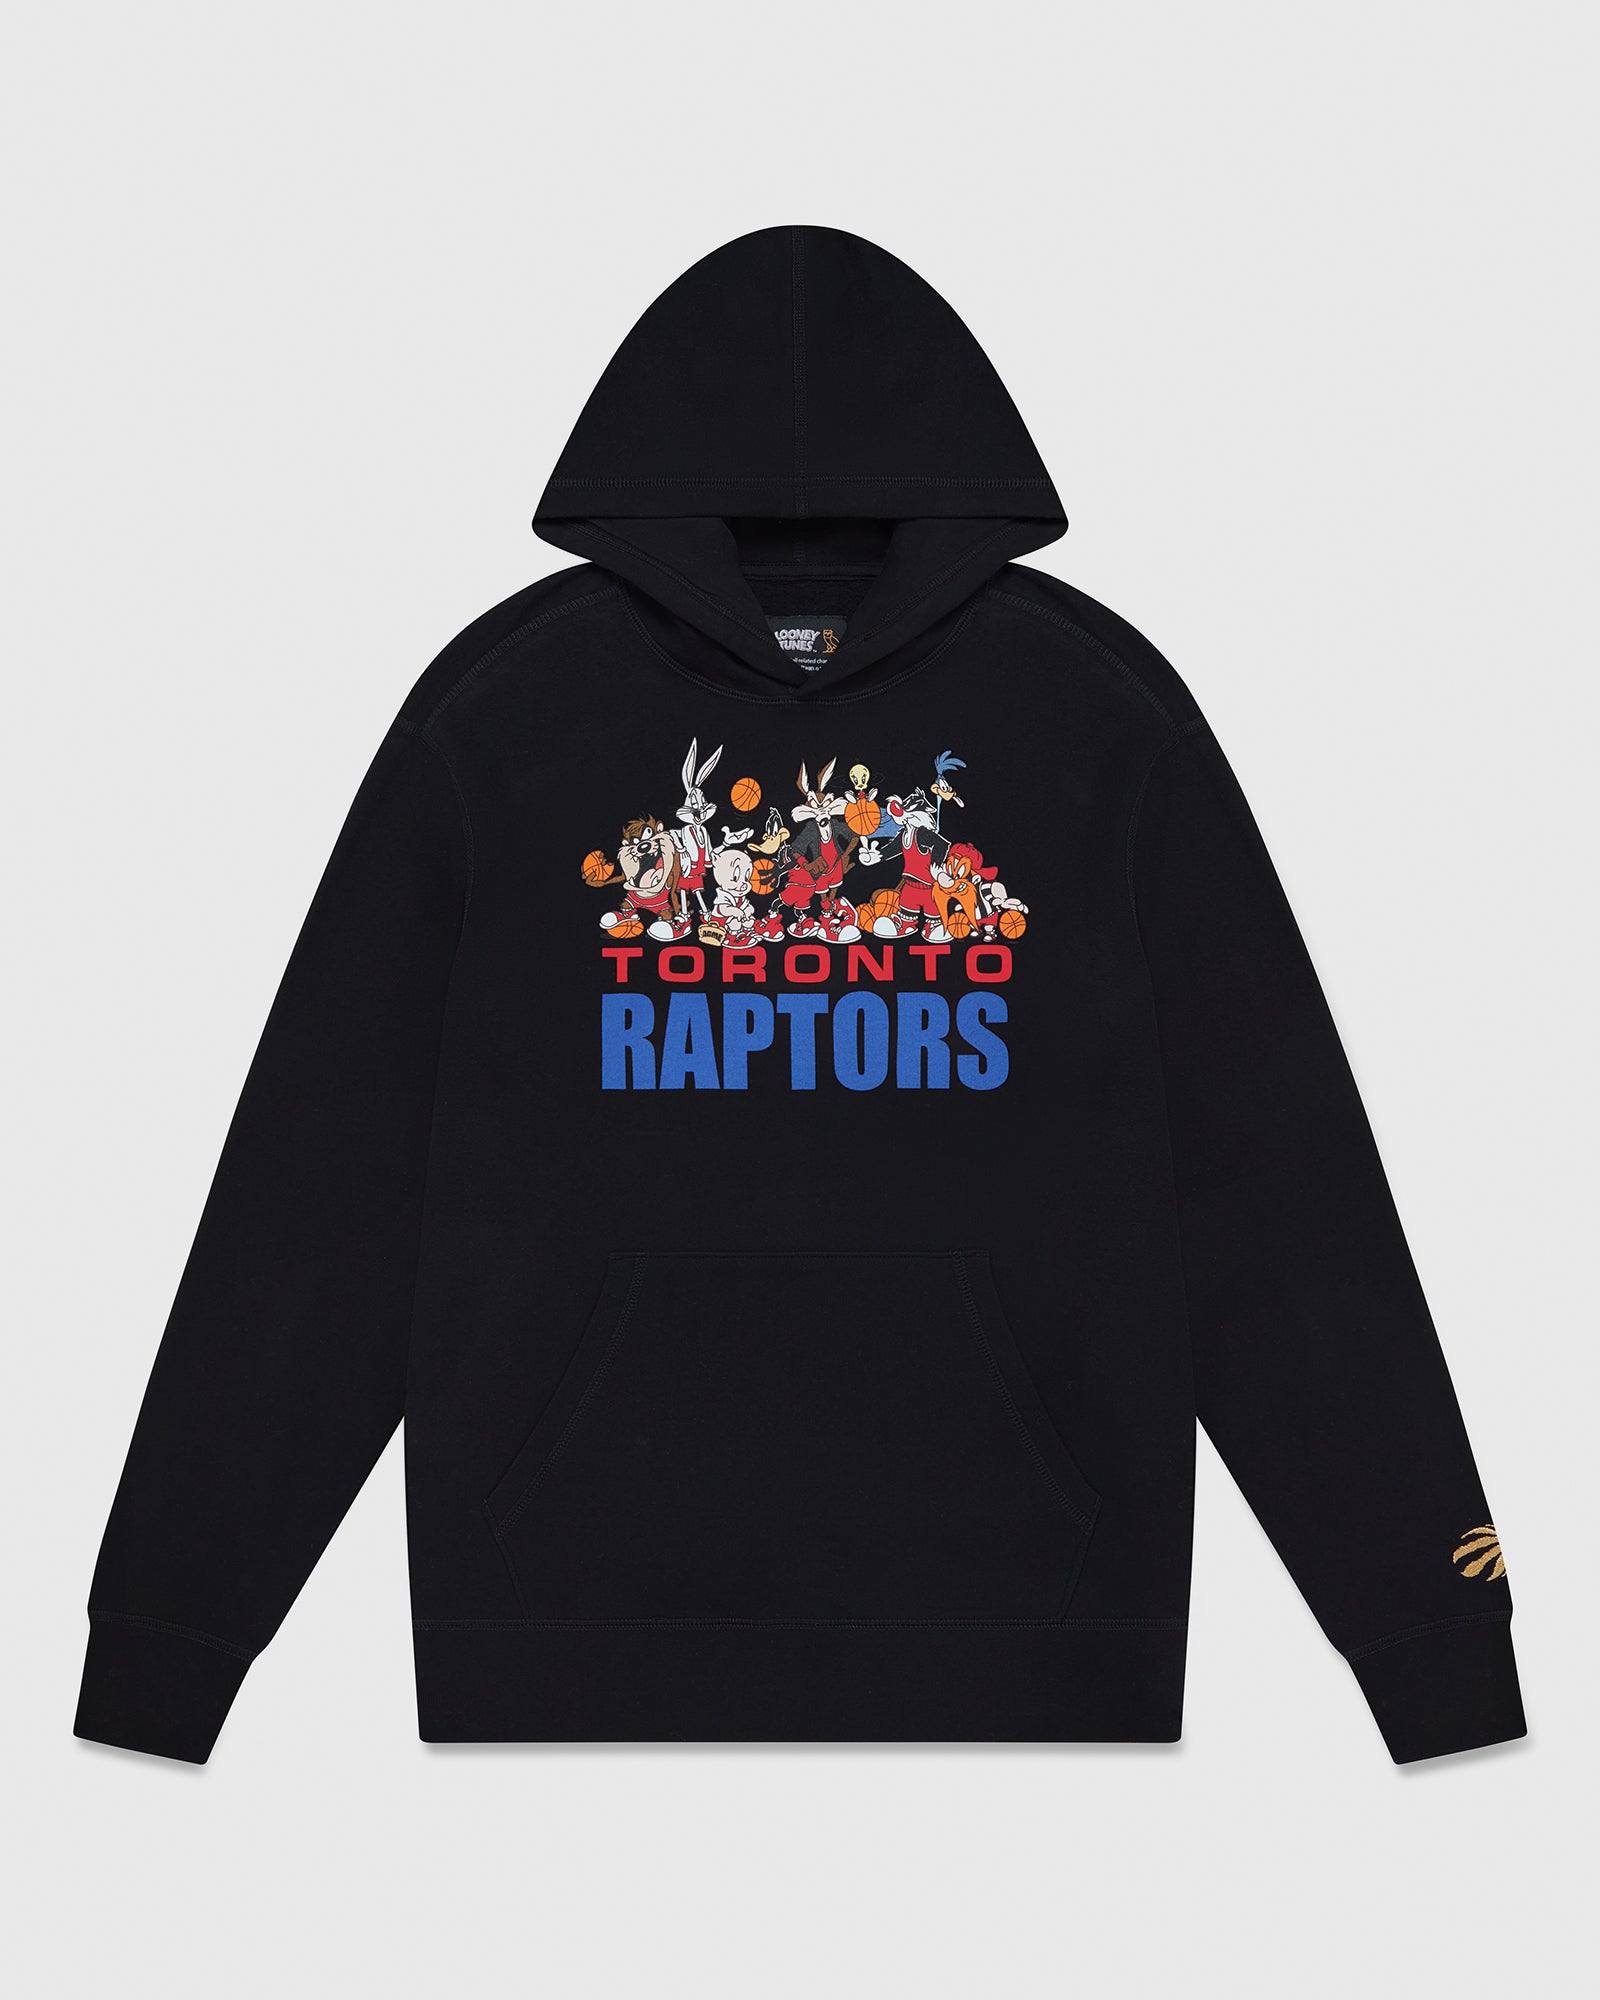 raptors team store